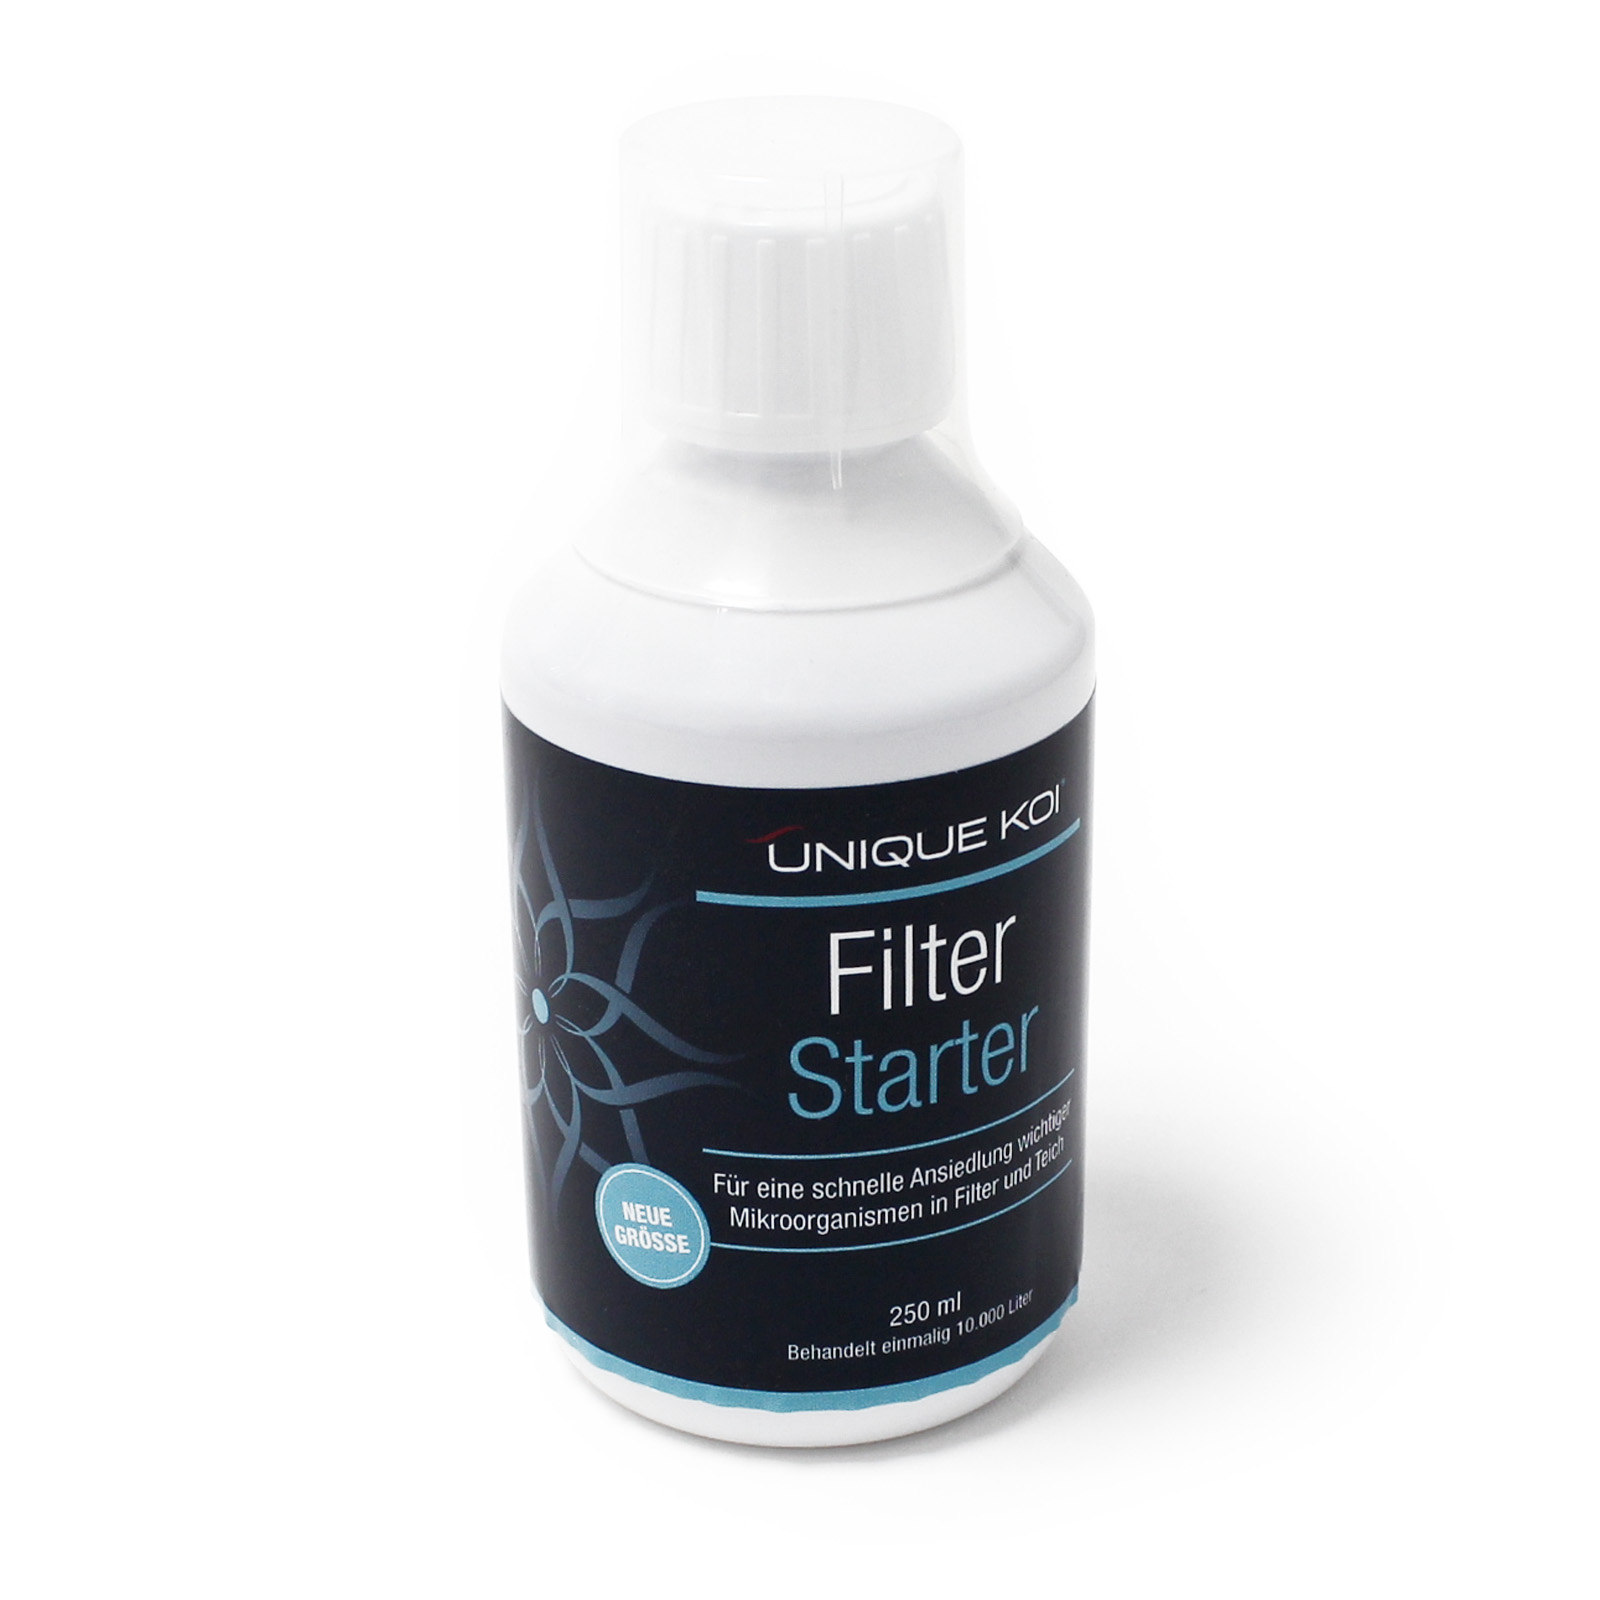 Unique Koi Filter Starter 250 ml für 10000 l Teichwasser